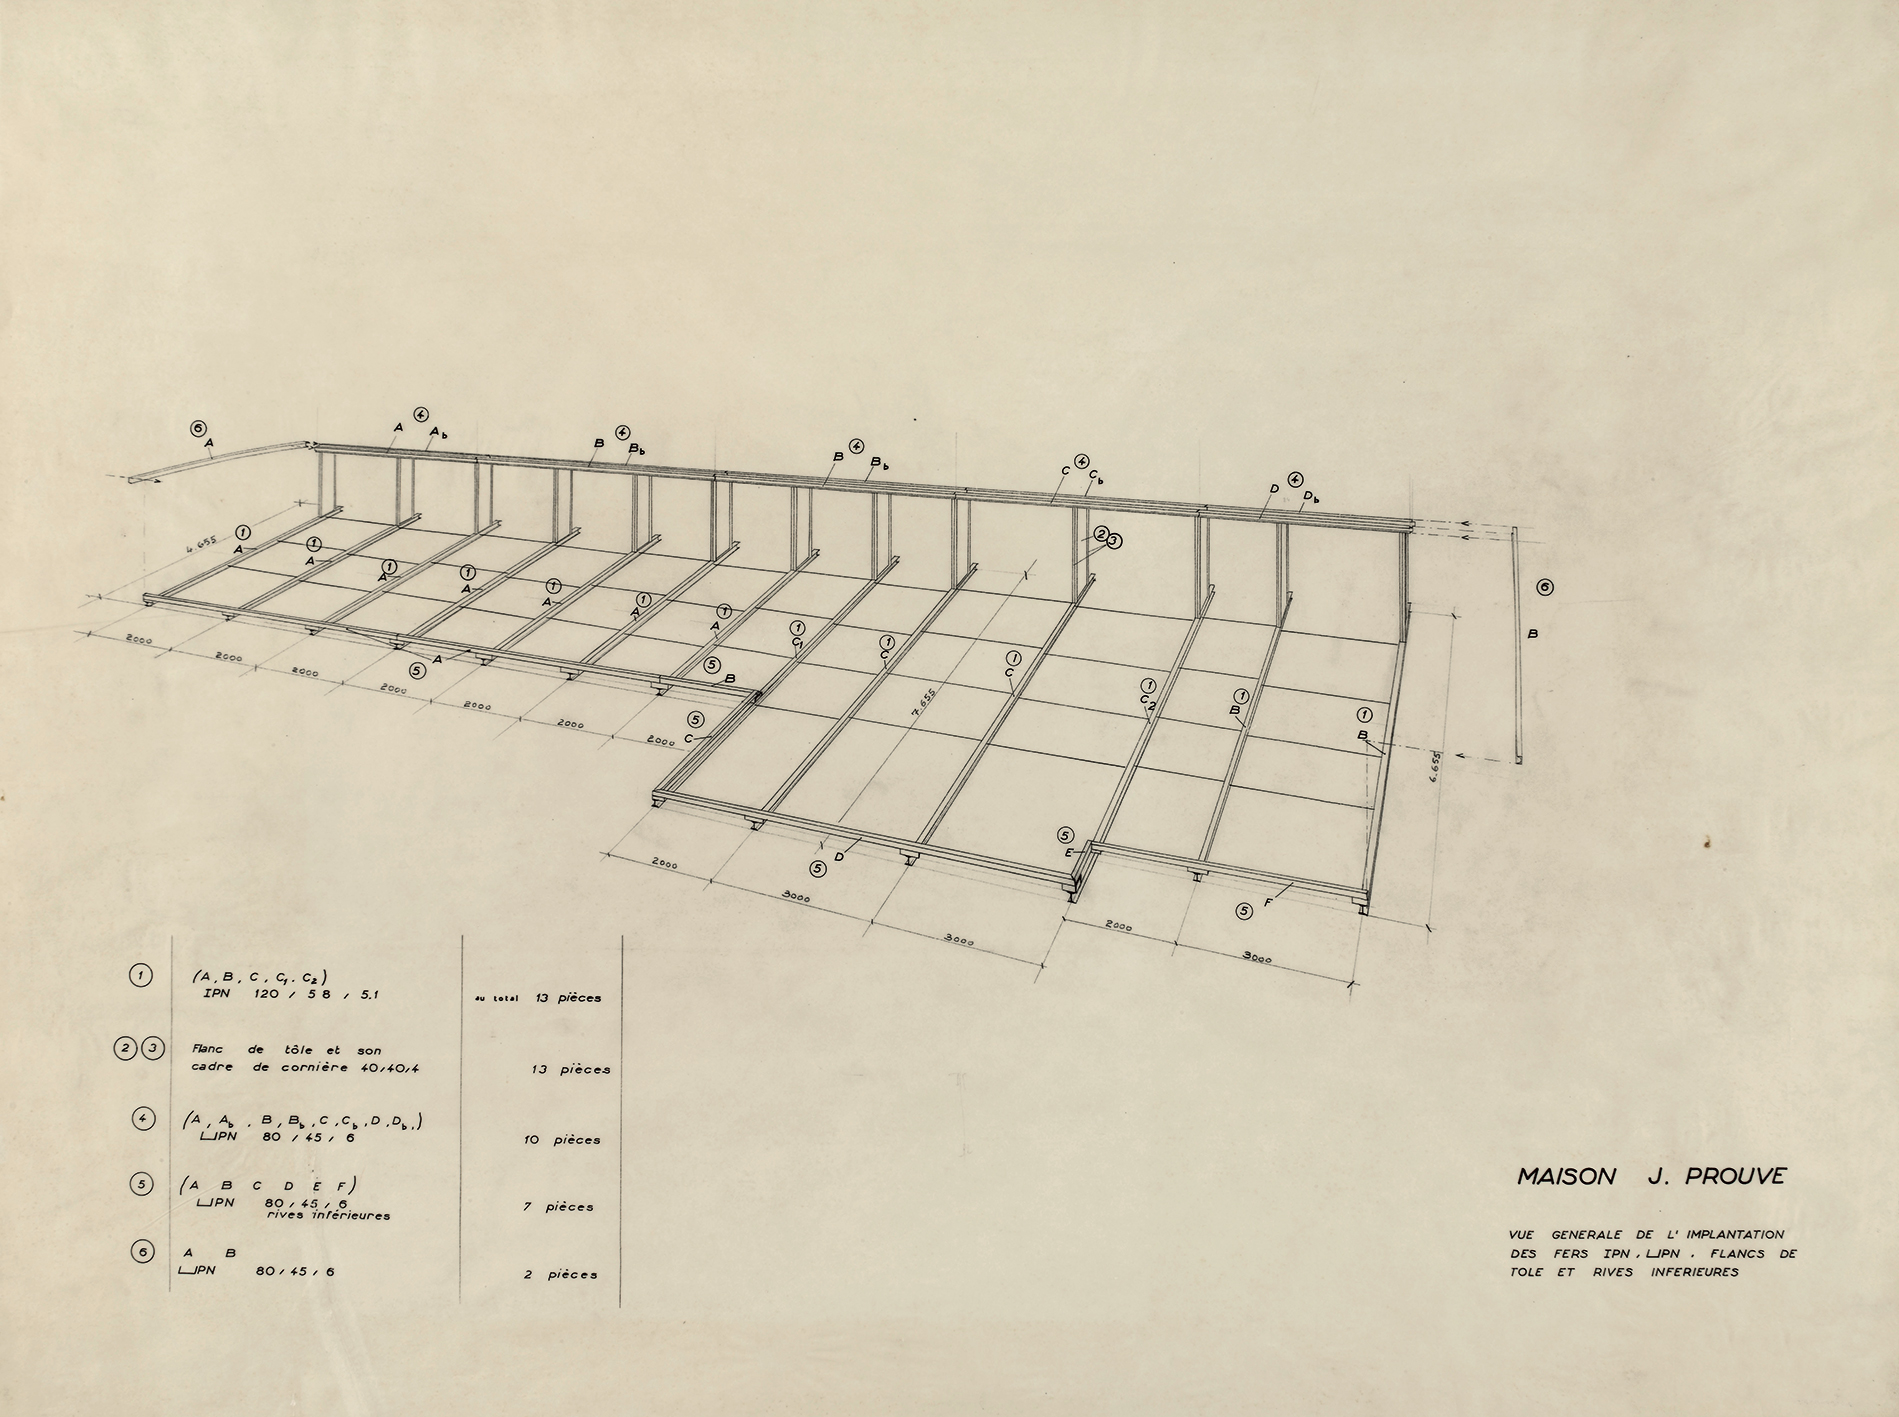 « Maison J. Prouvé ». Vue générale de l’implantation des fers IPN, UPN, flancs de tôle et rives inférieures. Plan non numéroté, 1954.